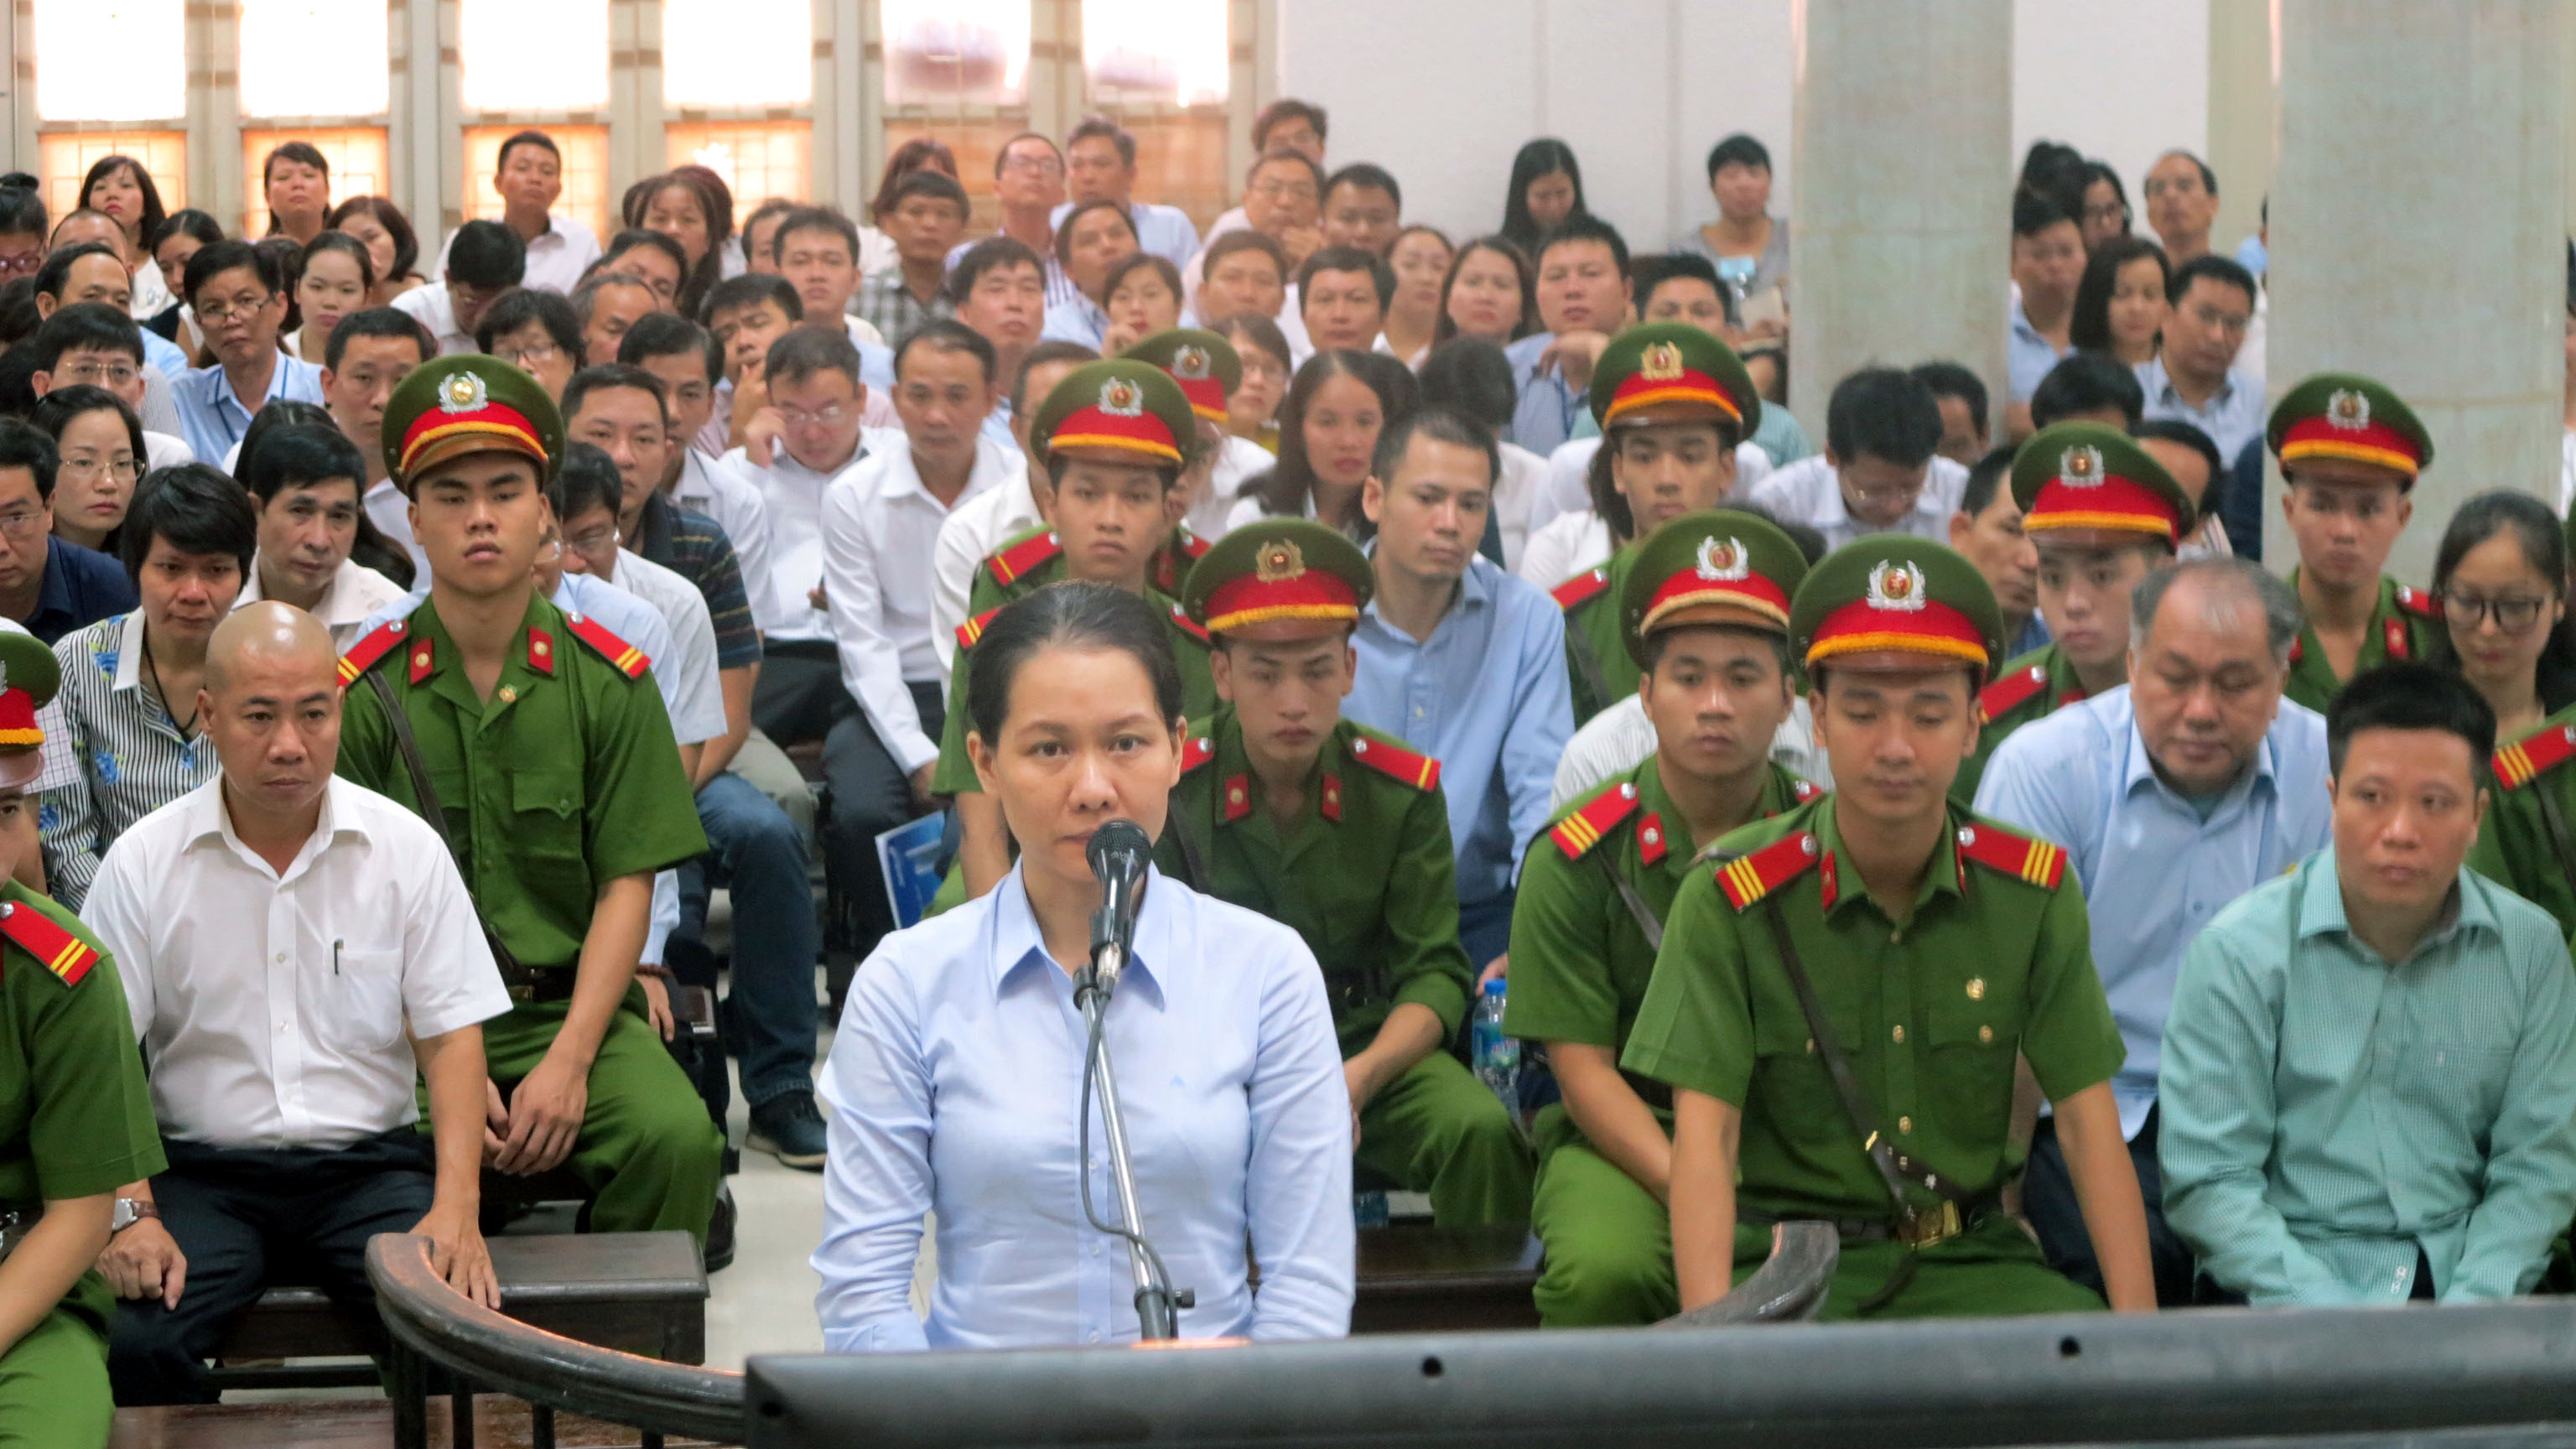 Bị cáo Nguyễn Minh Thu- nguyên tổng giám đốc OceanBank- bị cáo buộc đã tiếp nhận chủ trương chi lãi ngoài trái quy định từ Hà Văn Thắm - Ảnh: NGUYỄN HƯNG